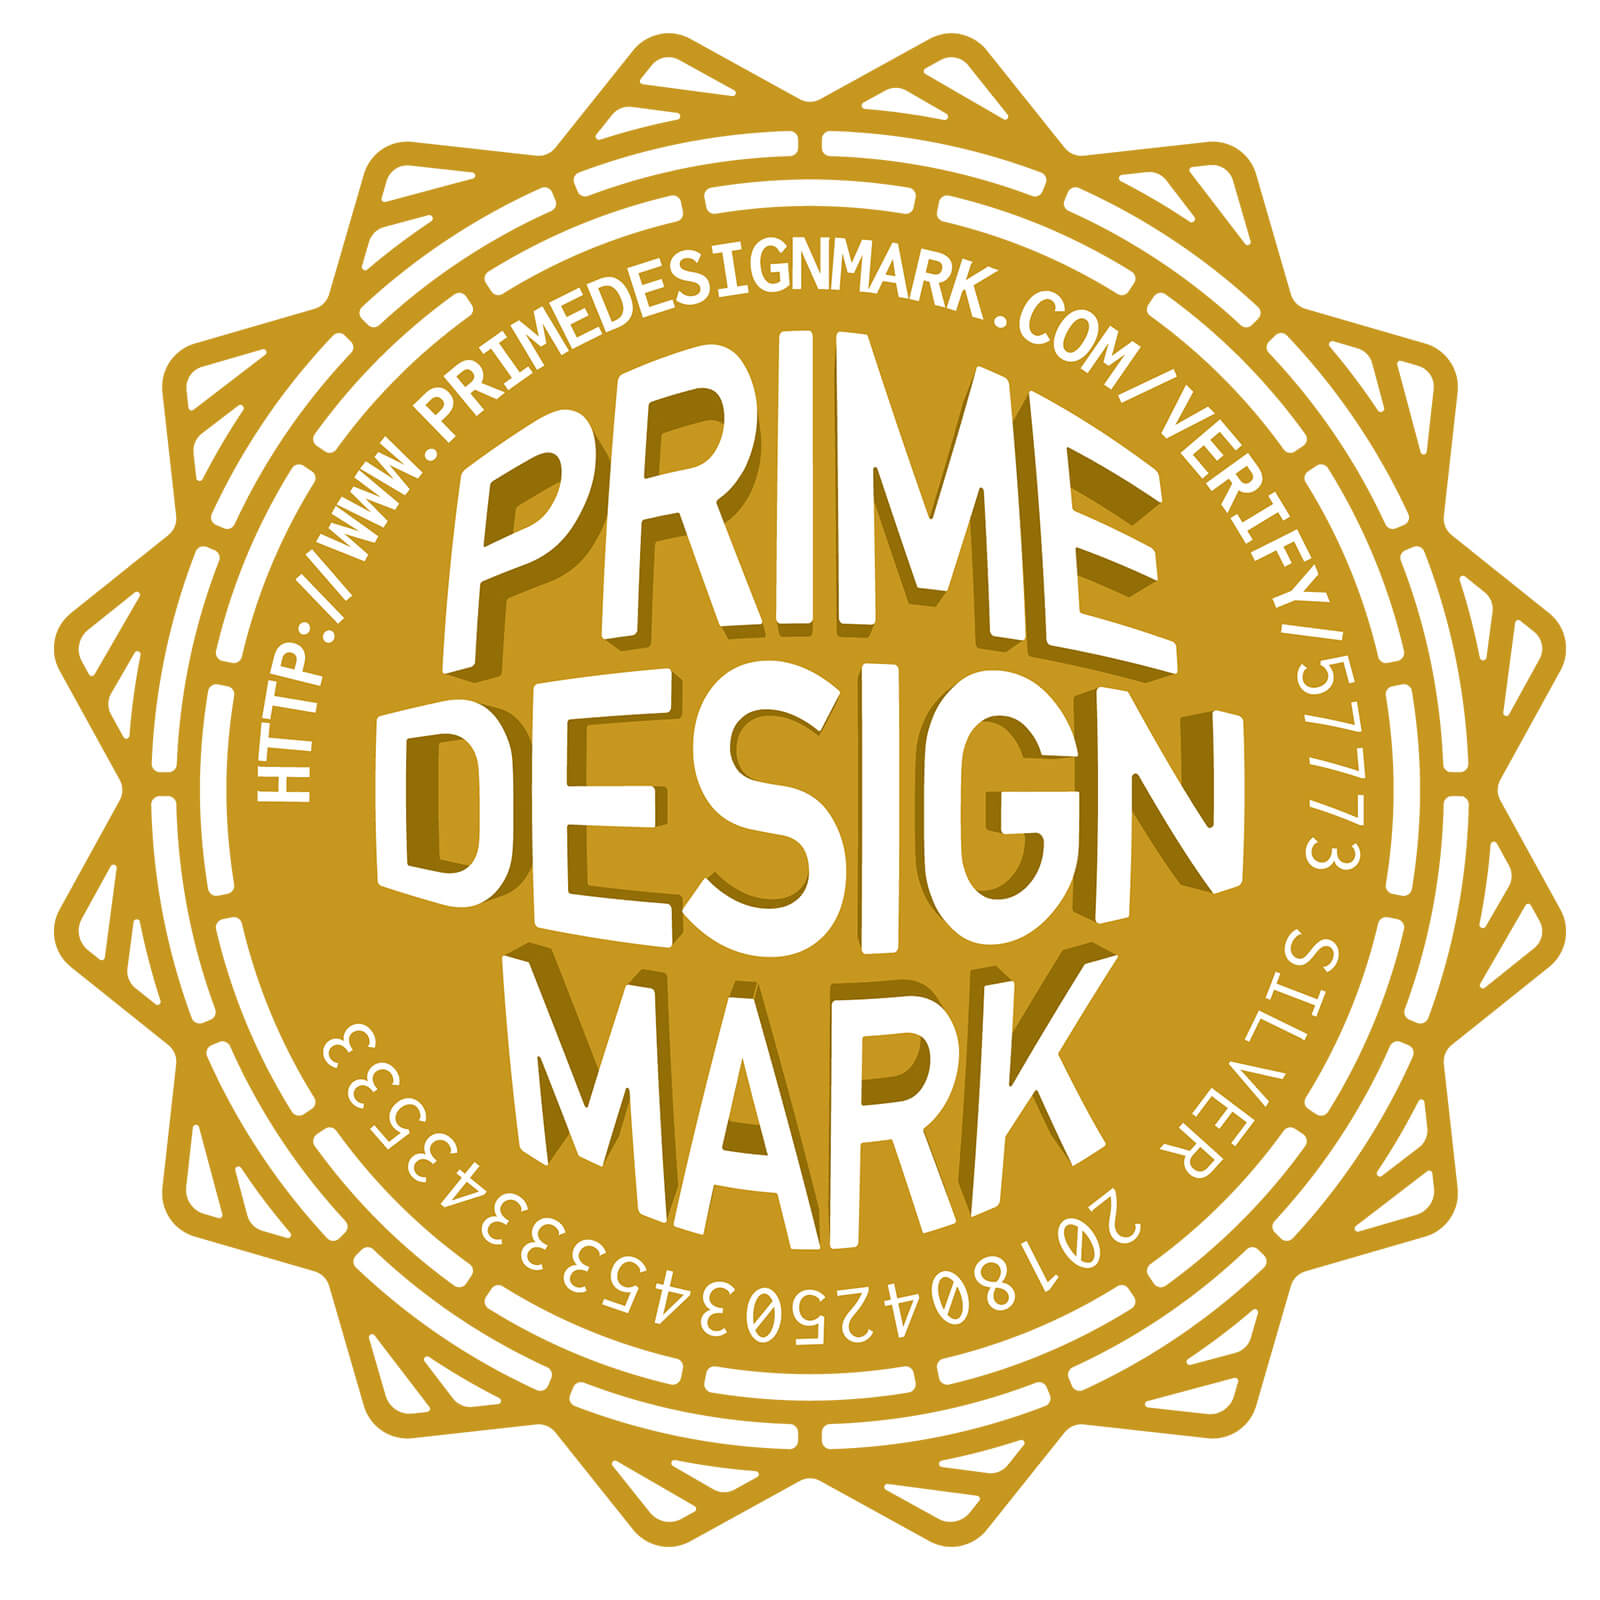 Prime Design Mark